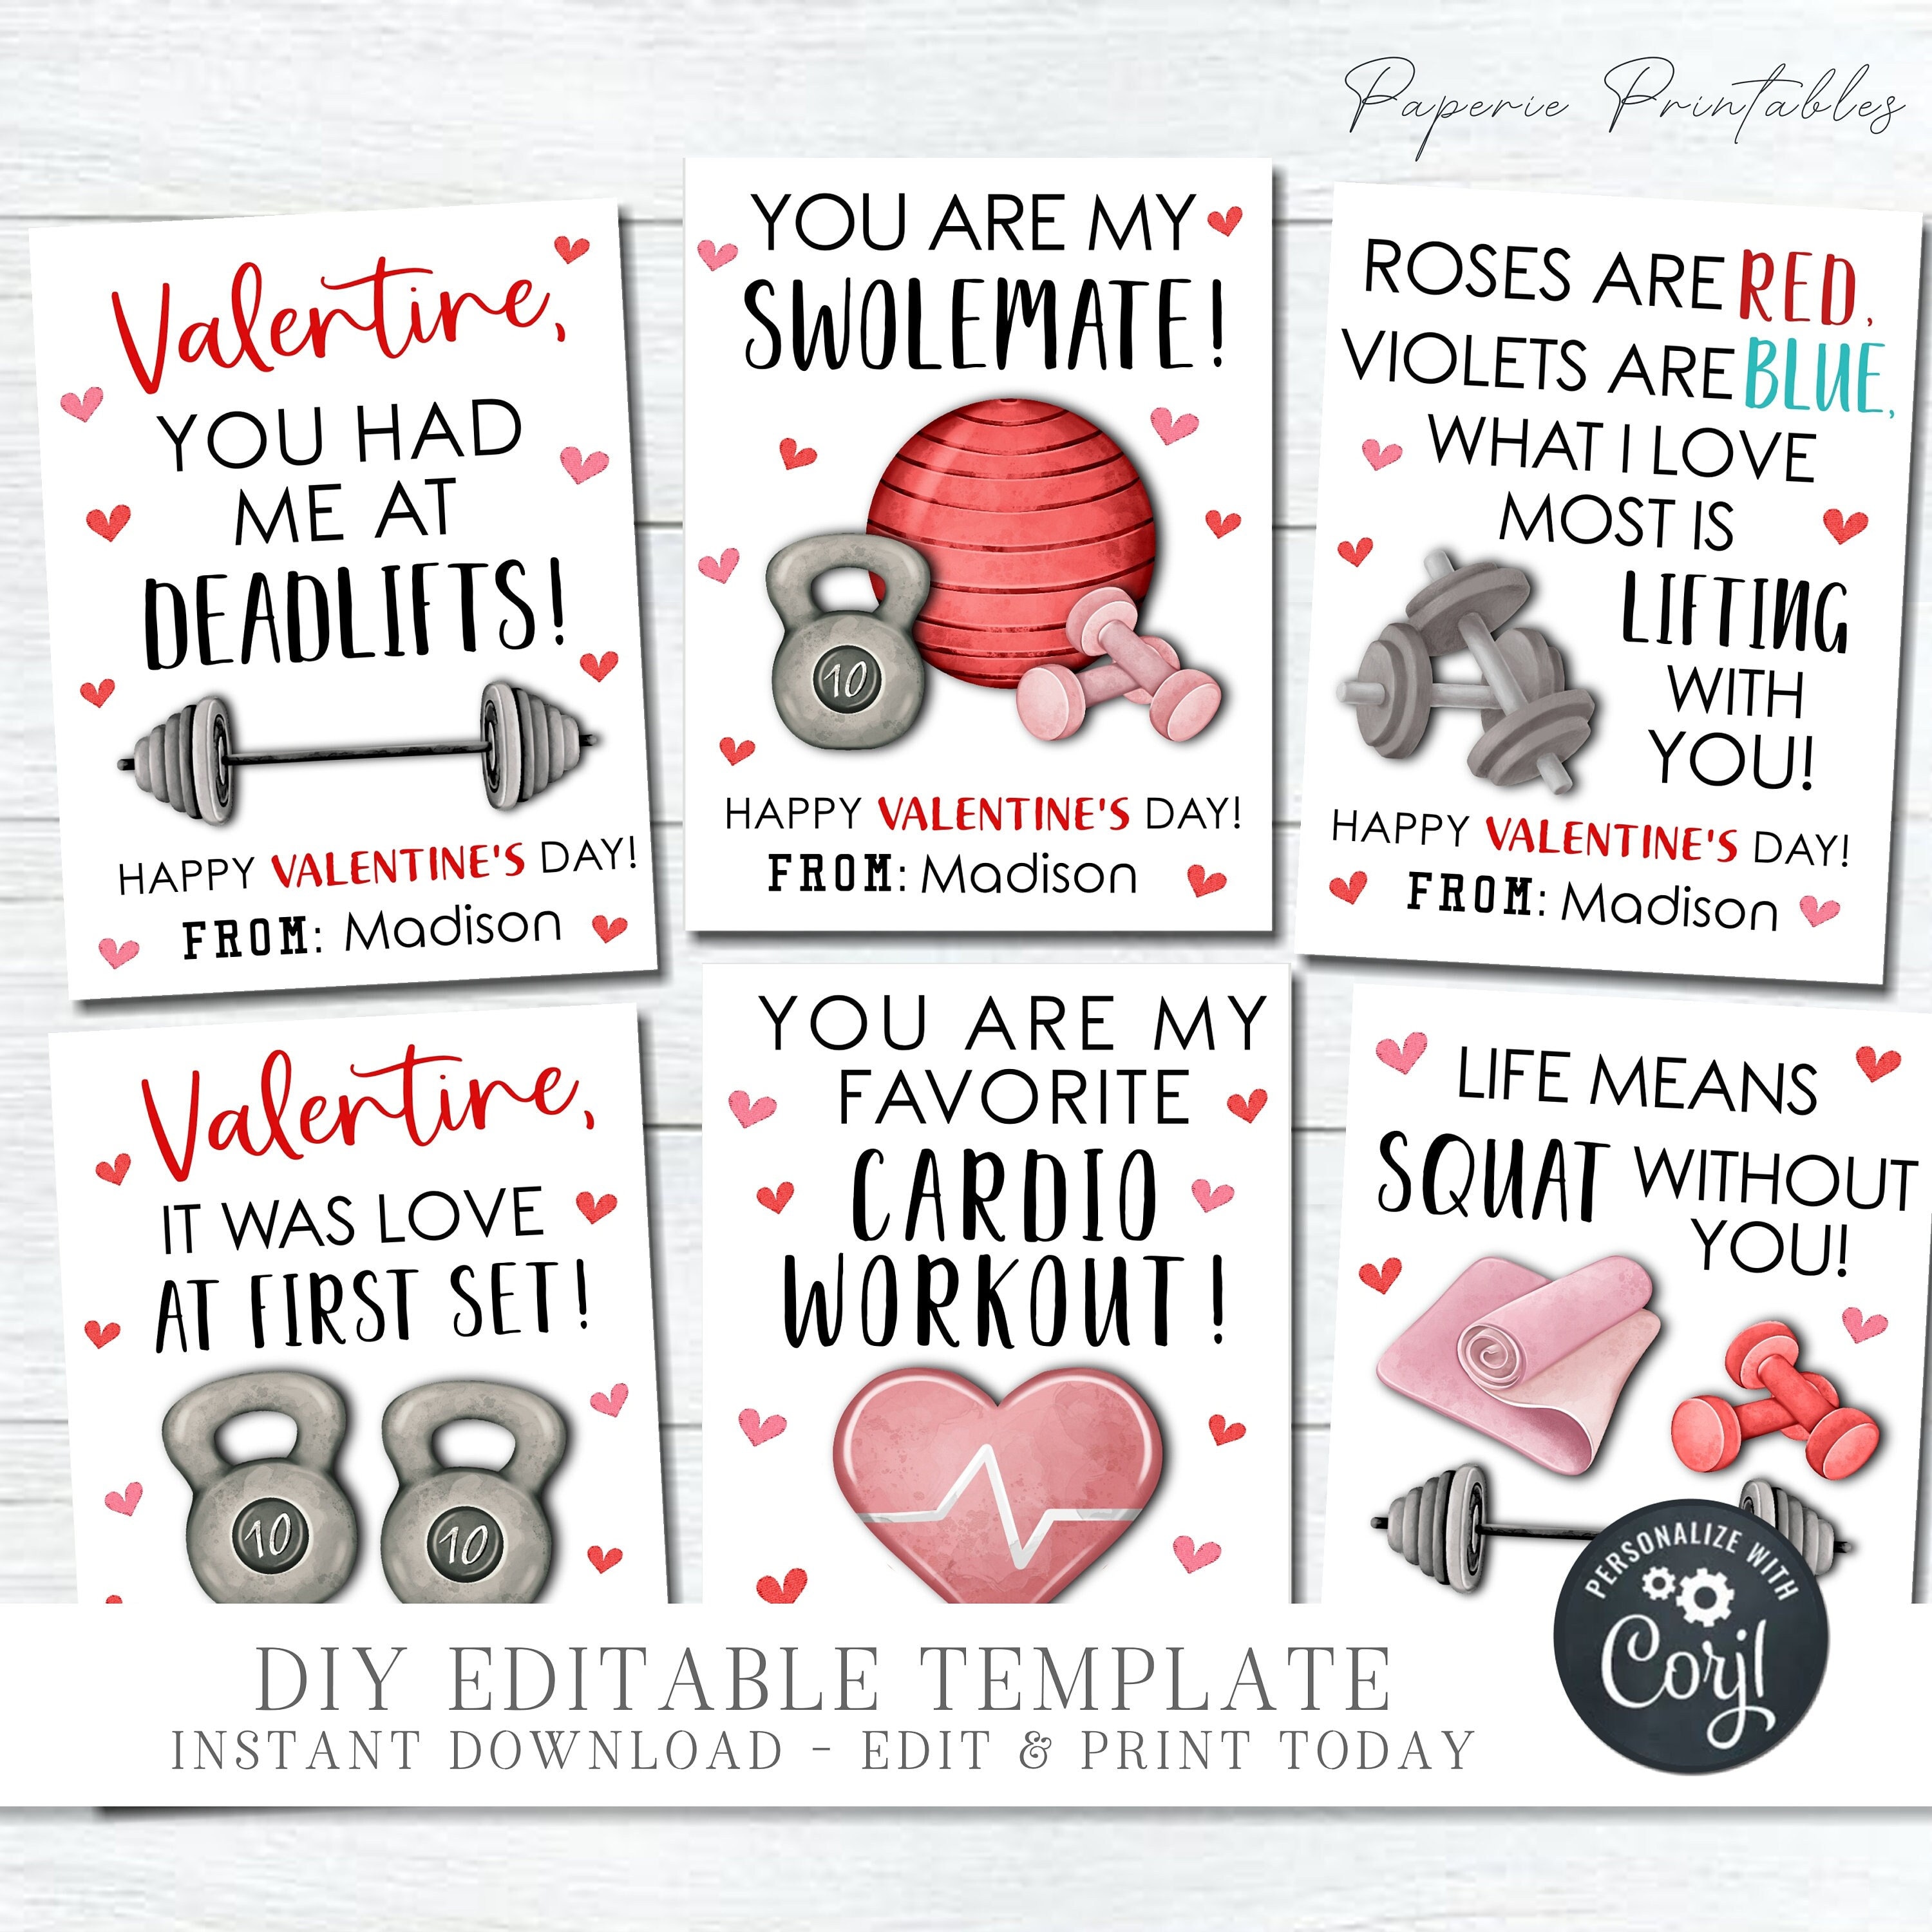 Valentine's Day basket for your gym rat boyfriend.